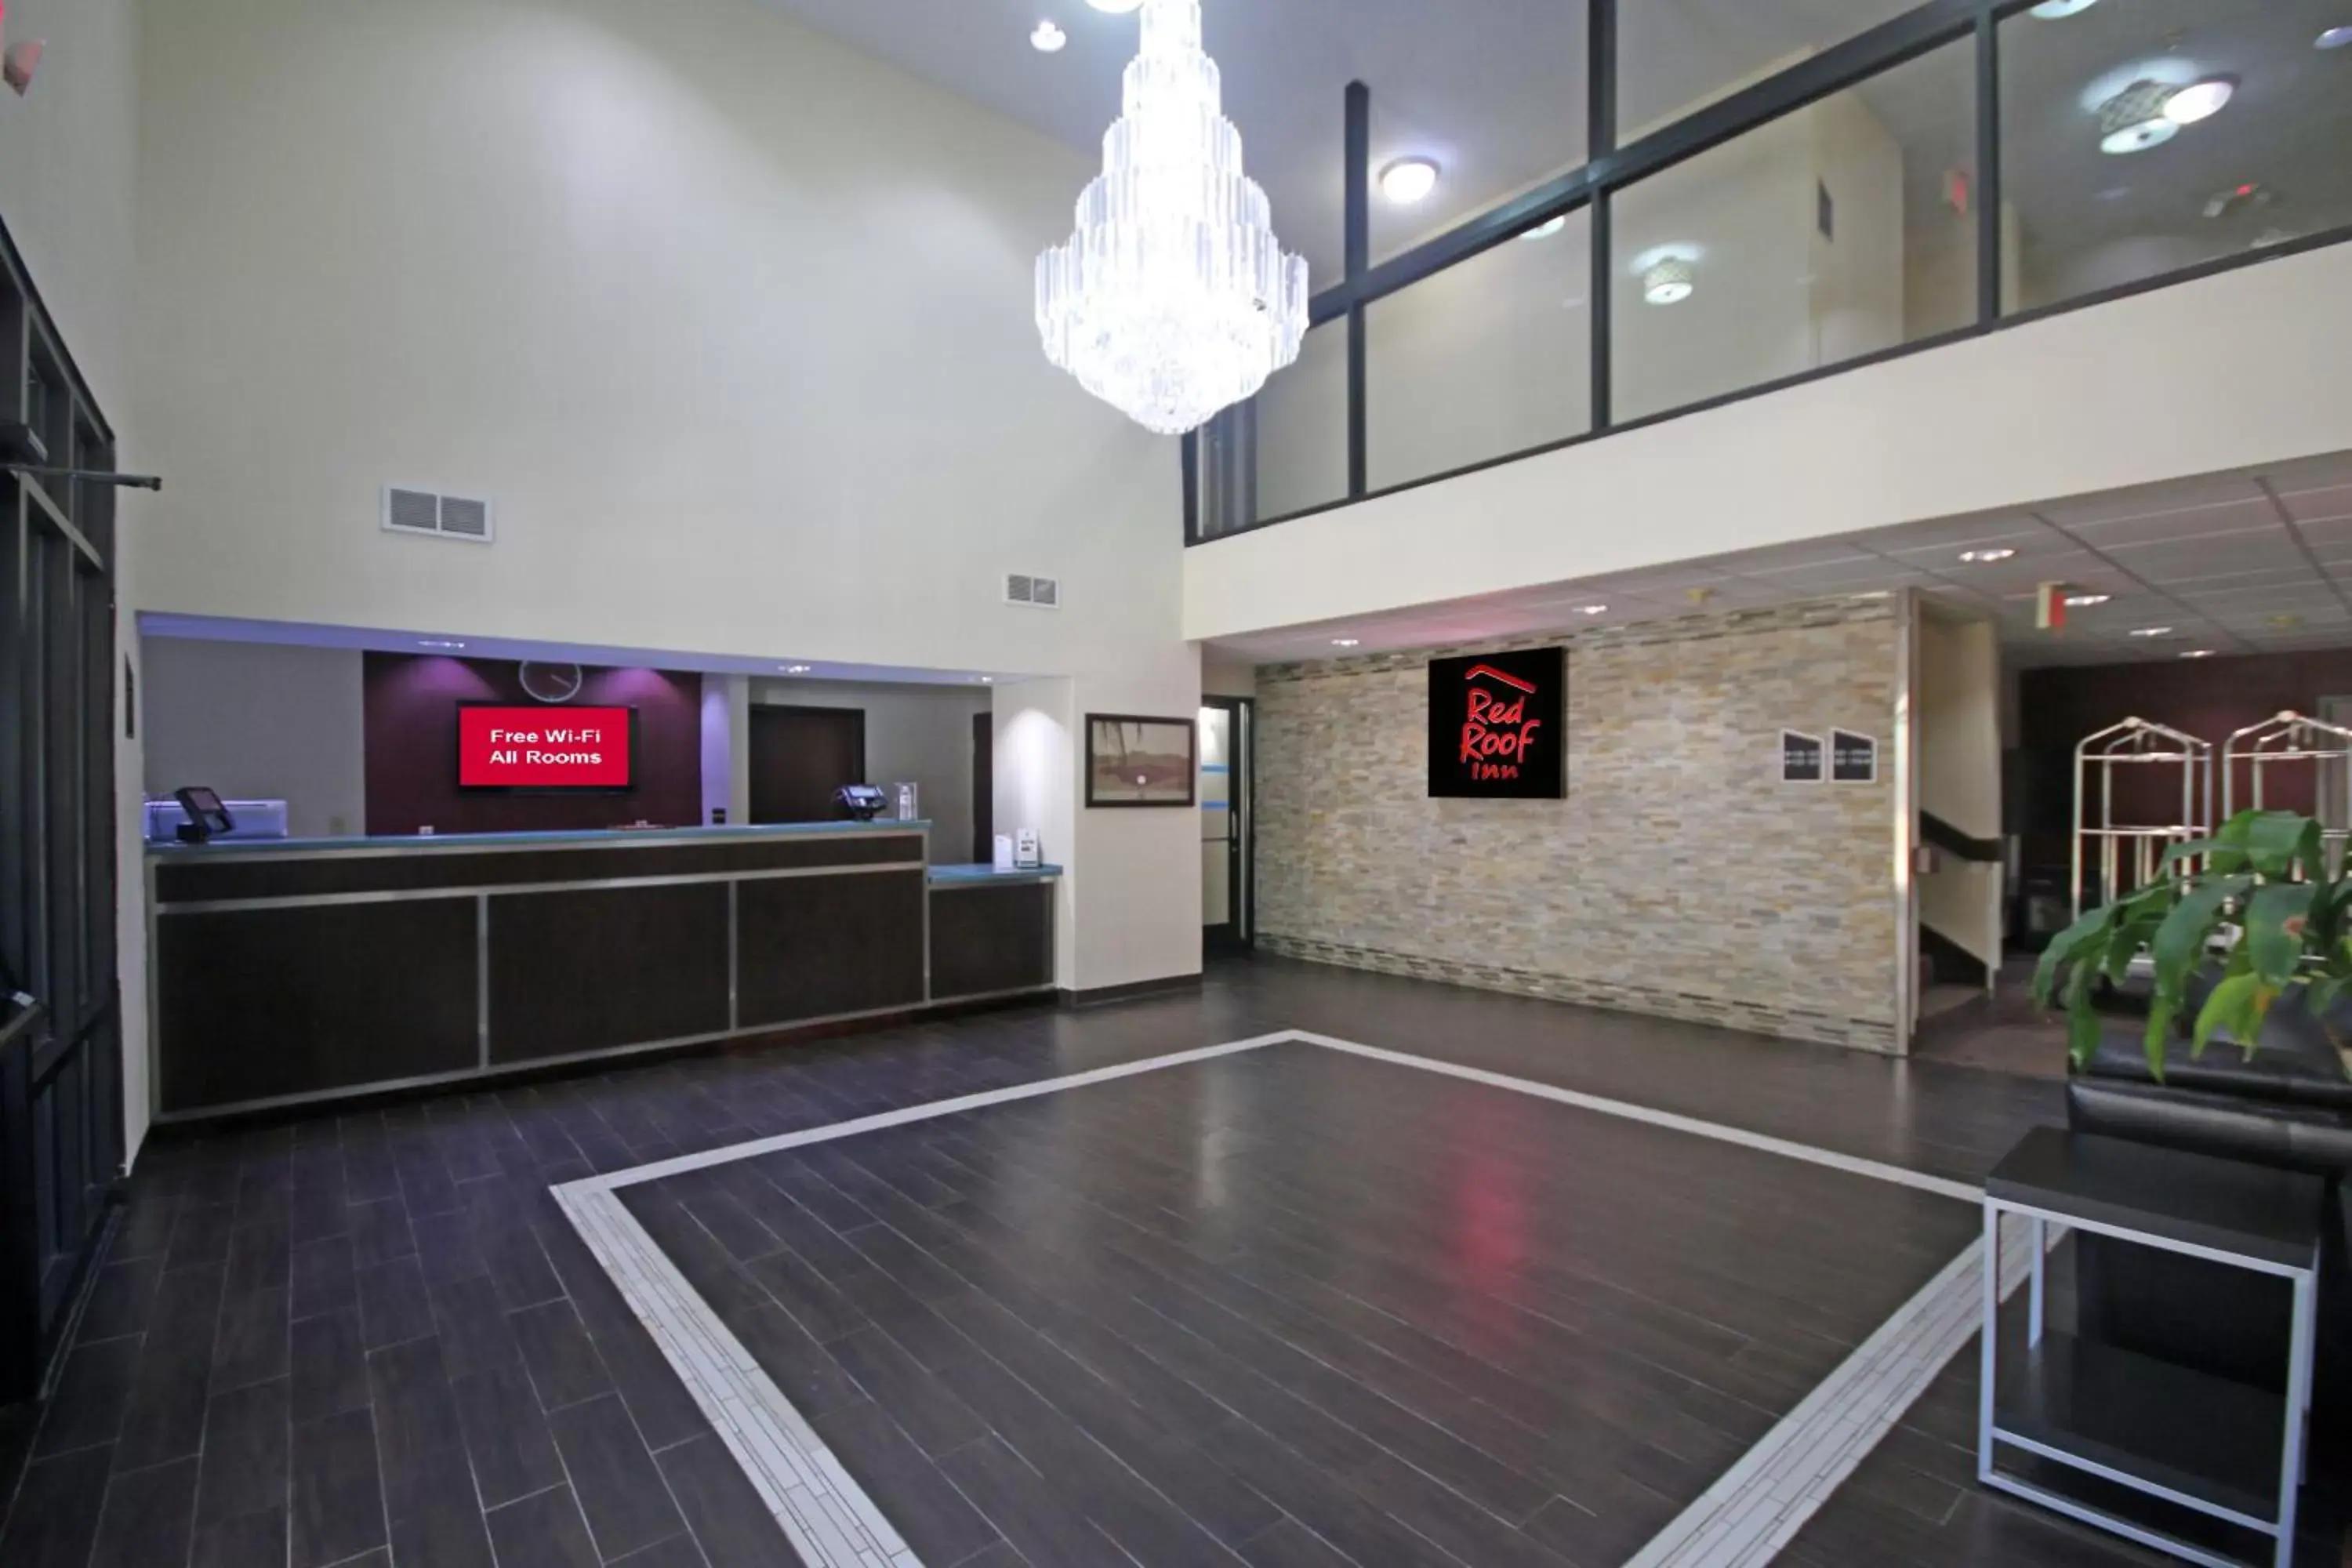 Lobby or reception, Lobby/Reception in Red Roof Inn Gaffney